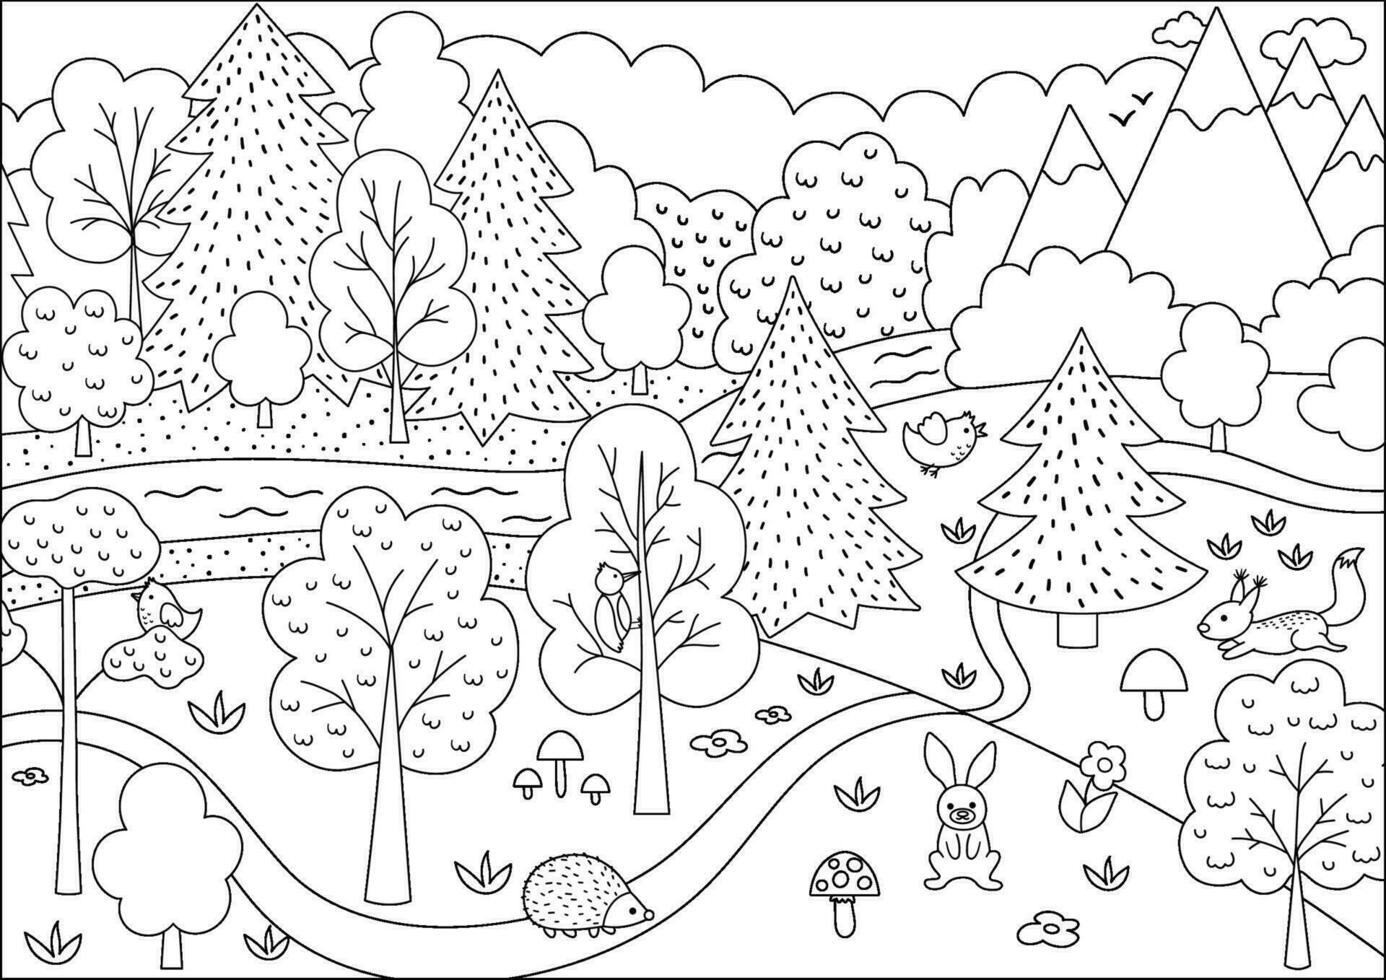 Vektor schwarz und Weiß wild Wald Szene mit Bäume, Berge, Tiere, Vögel. Frühling oder Sommer- Linie Wald Landschaft mit Blumen, Pflanzen, Pilze. wild Natur Landschaft oder Färbung Seite